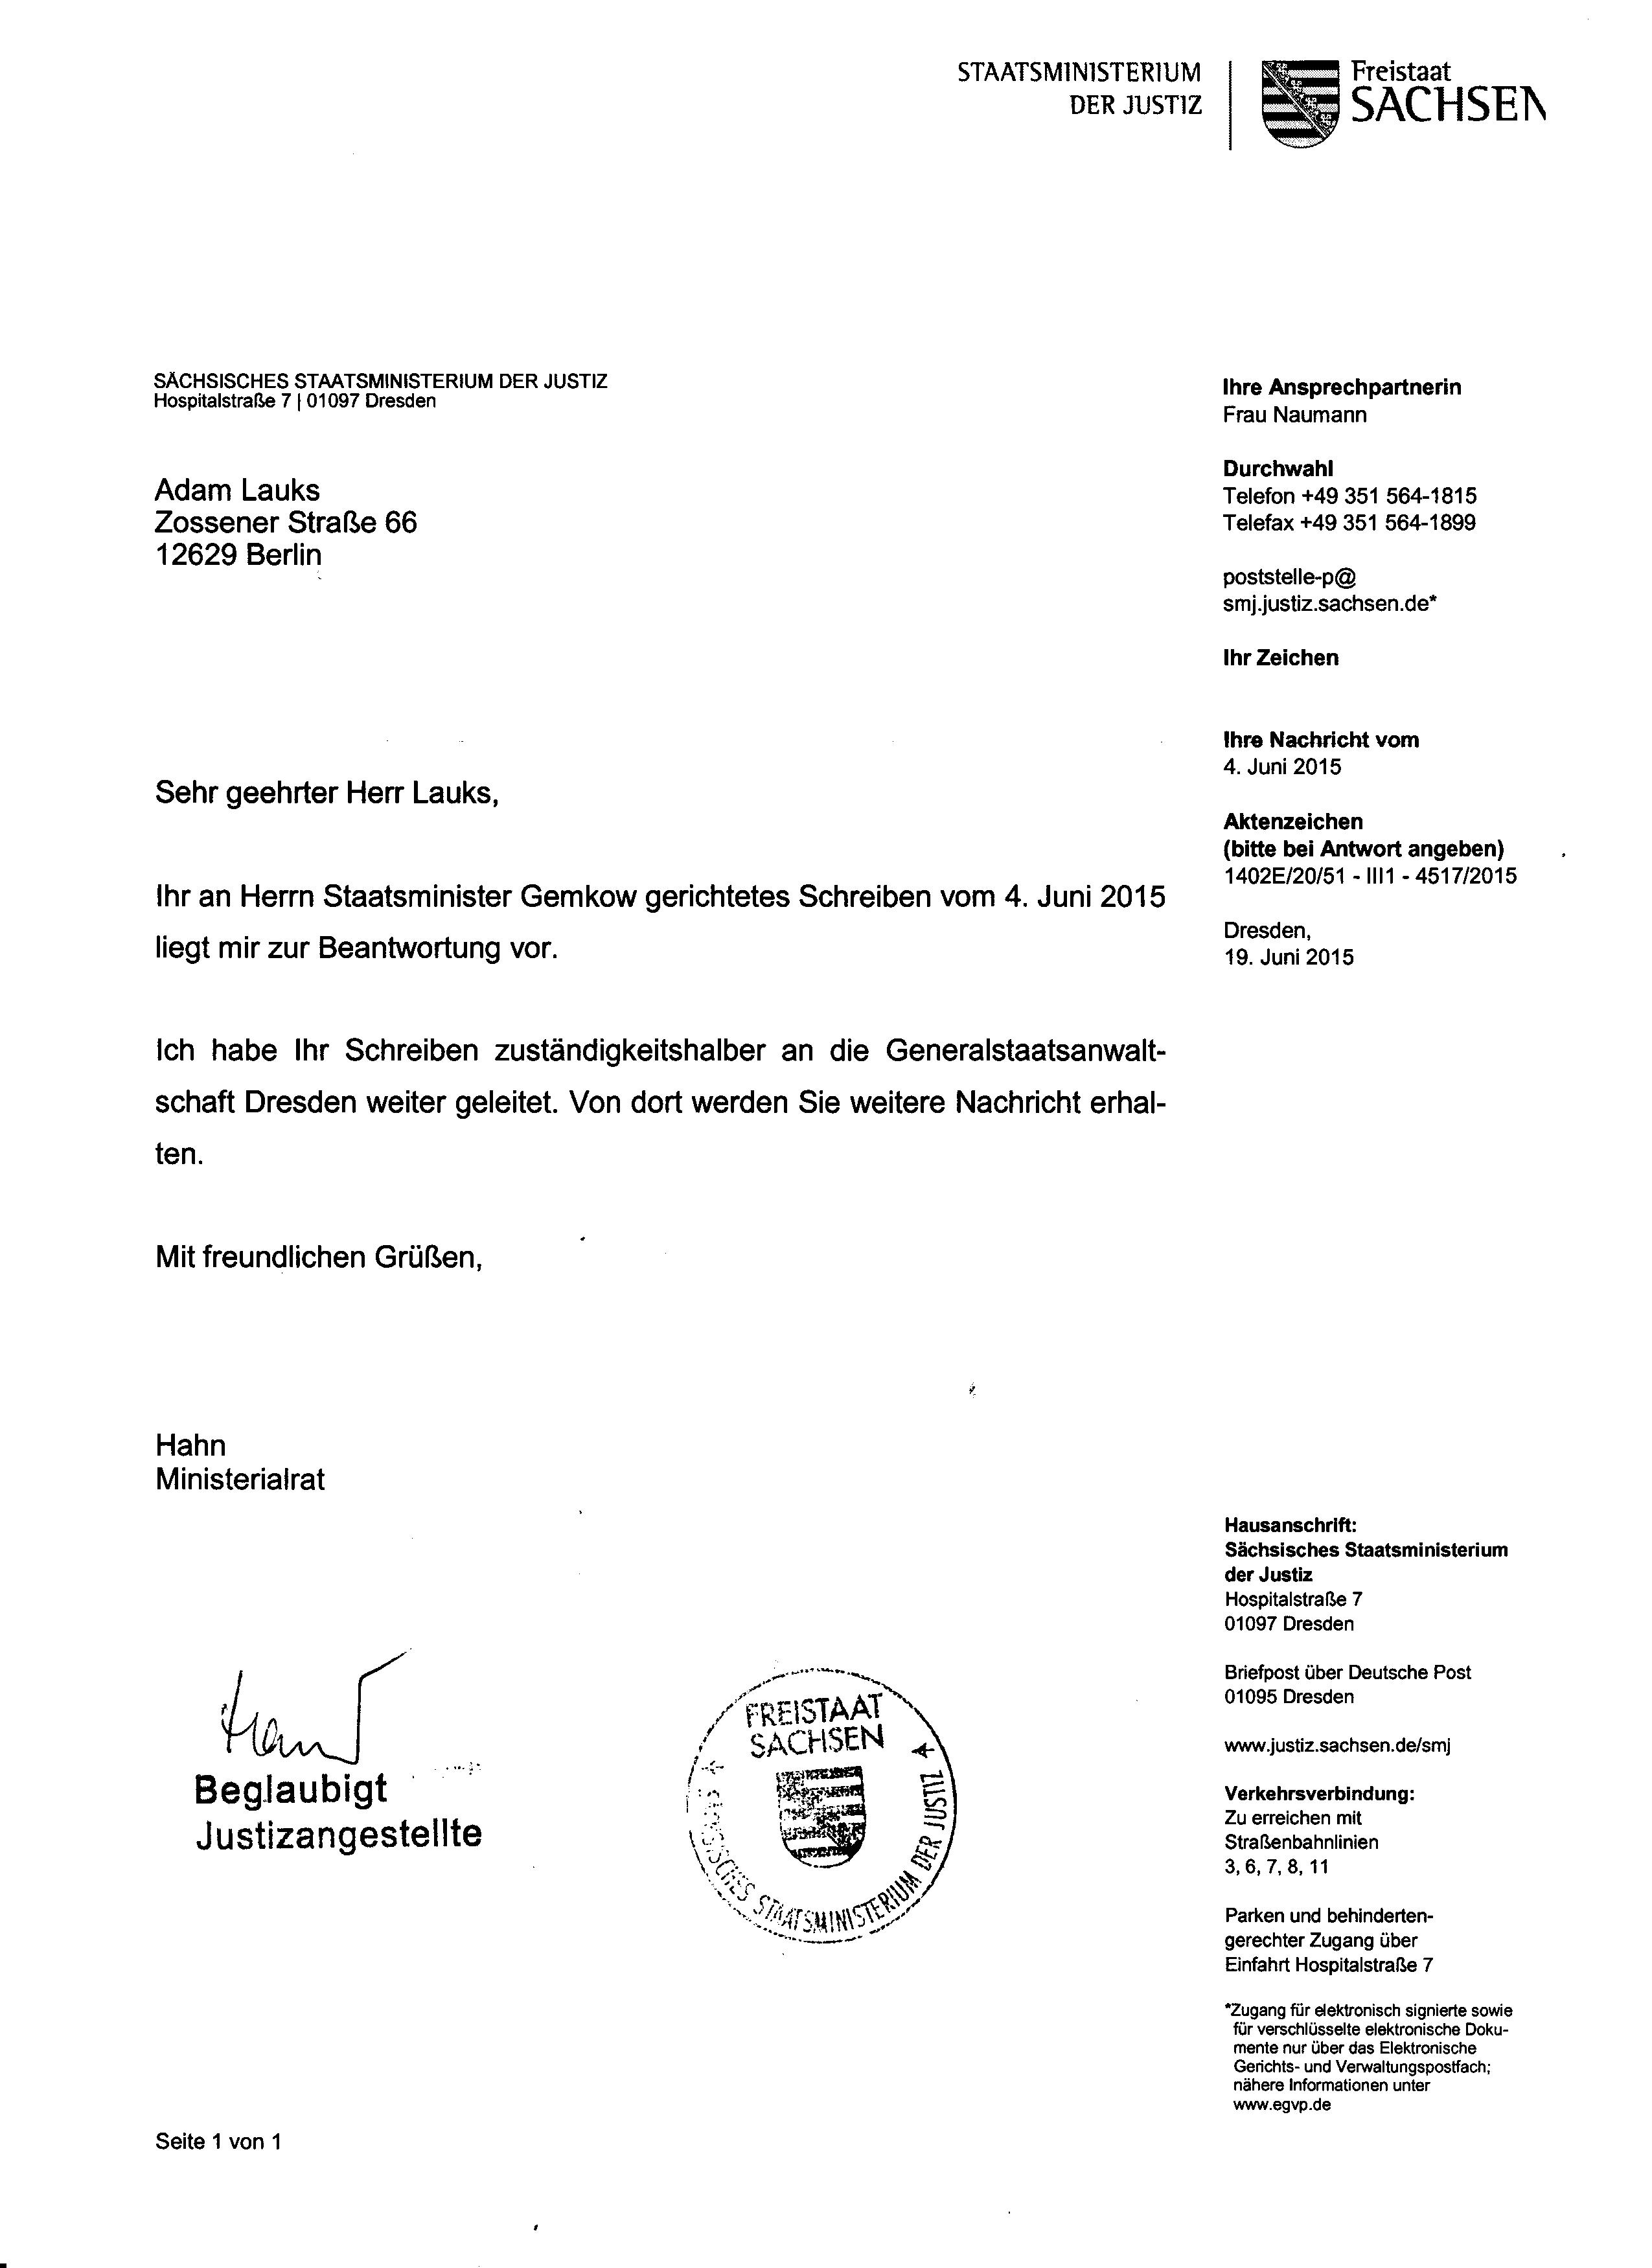 Staatsministerium derJustiz des Freistaates Sachsen hat zuständigkeitshalber Generalstaatsanwaltschaft Dresden beauftragt Ermittlungen zu überwachen